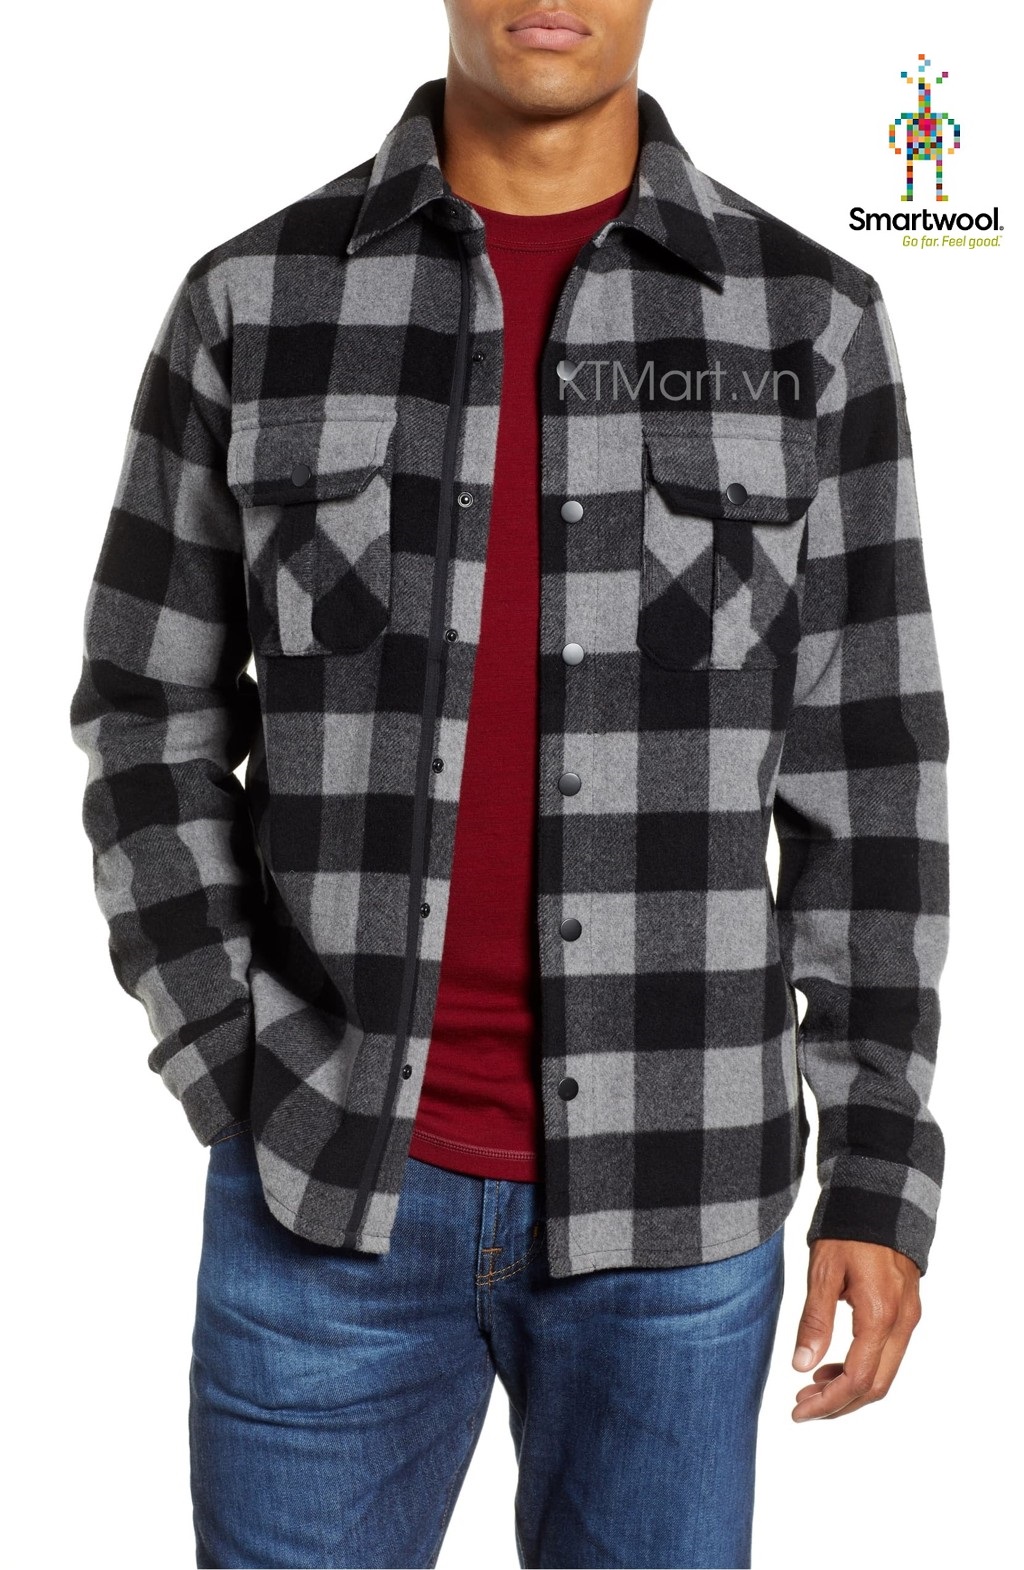 Smartwool Men’s Anchor Line Shirt Jacket SW000122 Smartwool